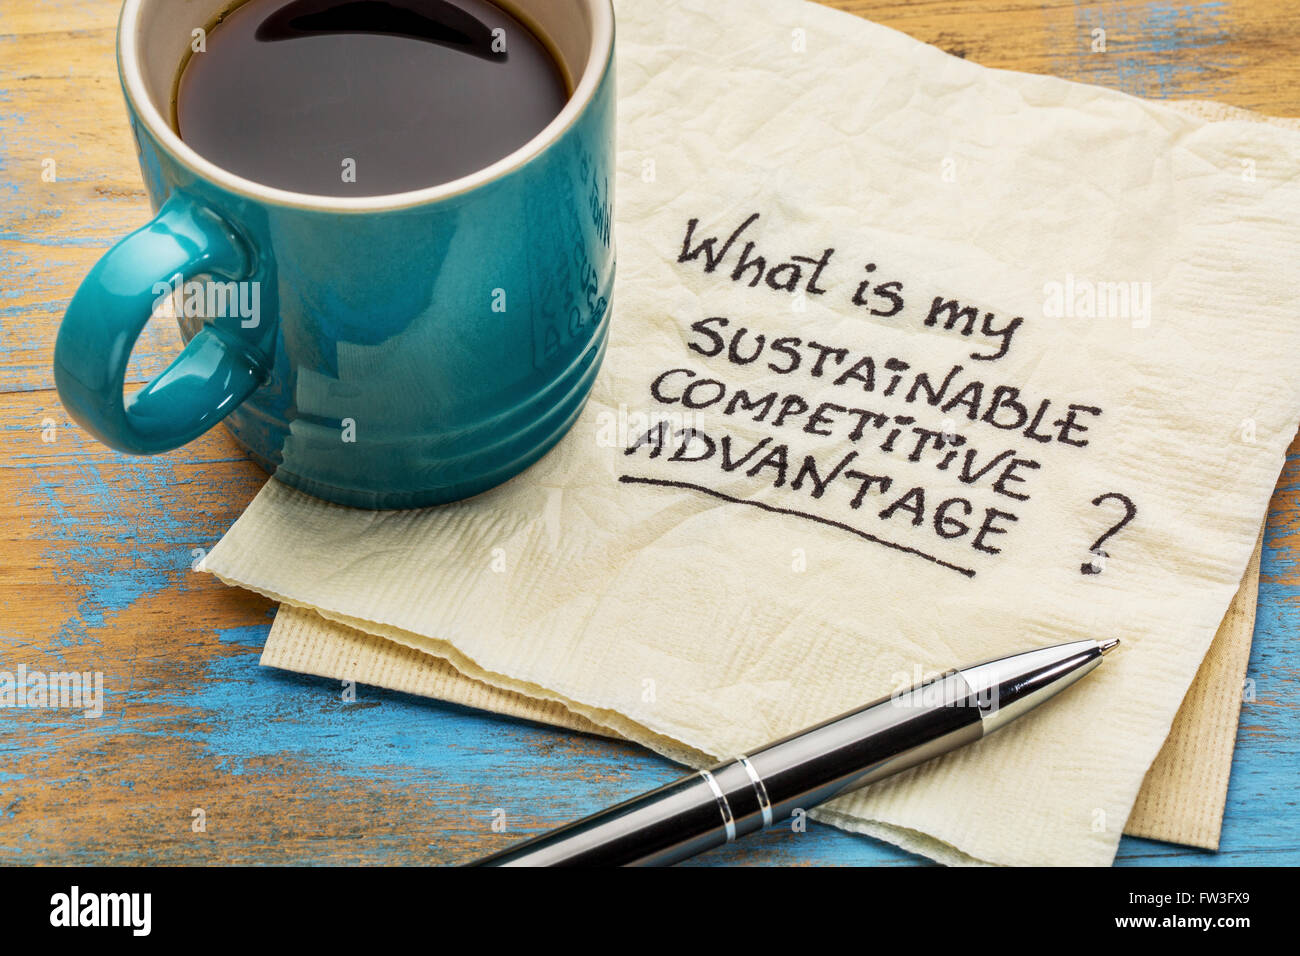 ¿Cuál es mi ventaja competitiva sostenible pregunta - escritura en una servilleta con una taza de café Foto de stock